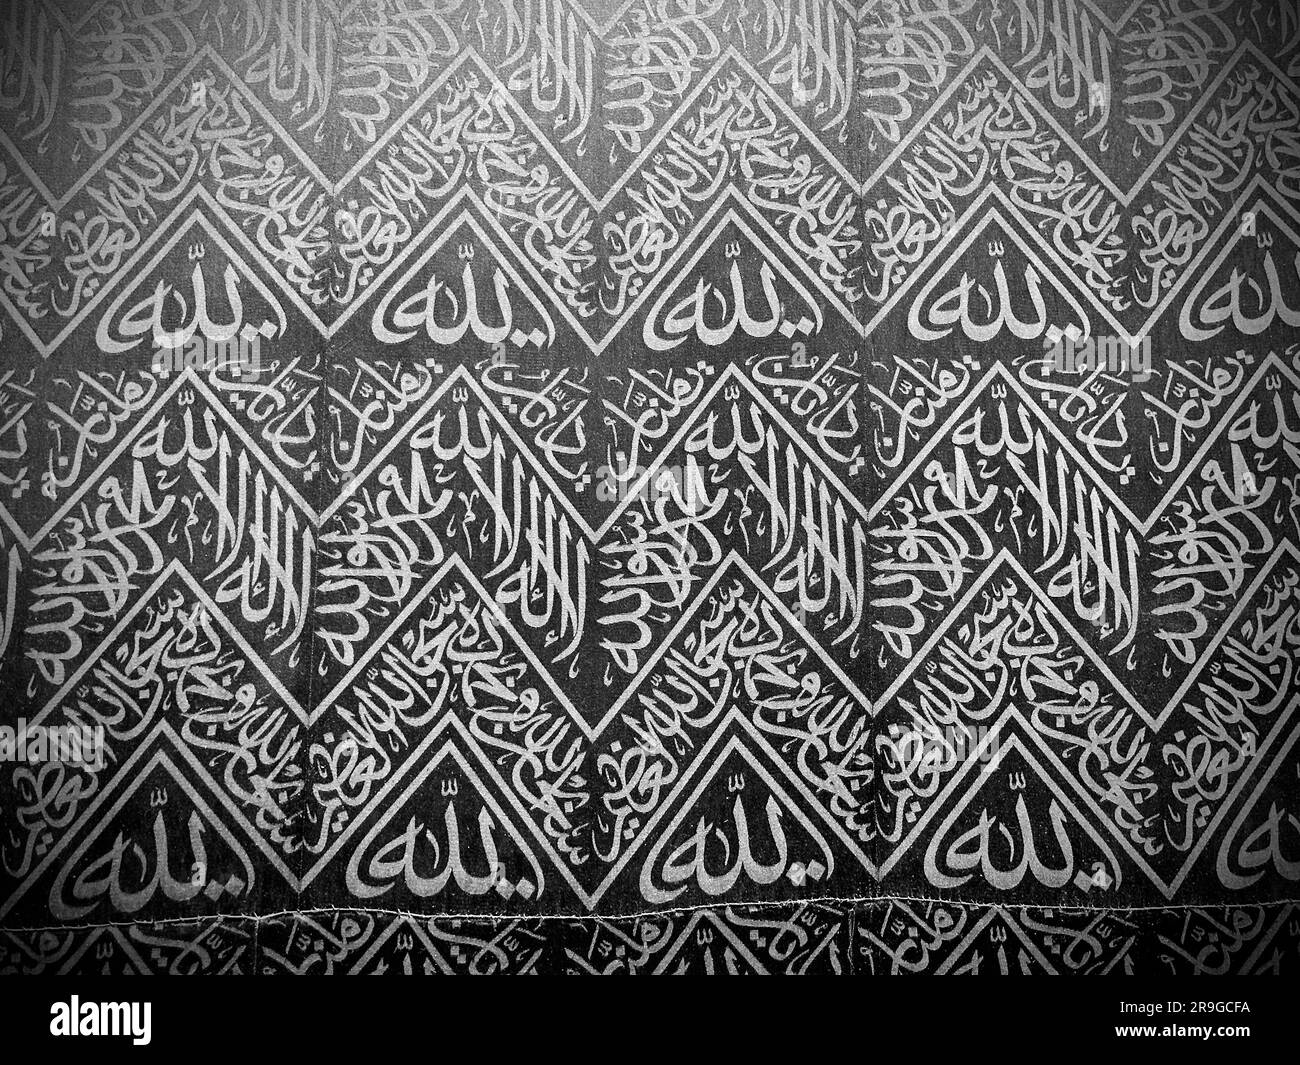 Iscrizioni di calligrafia araba e ornamenti d'arte islamica al sipario di al Kaaba nella moschea di al Haram - Mecca Arabia Saudita - hajj e umra Foto Stock